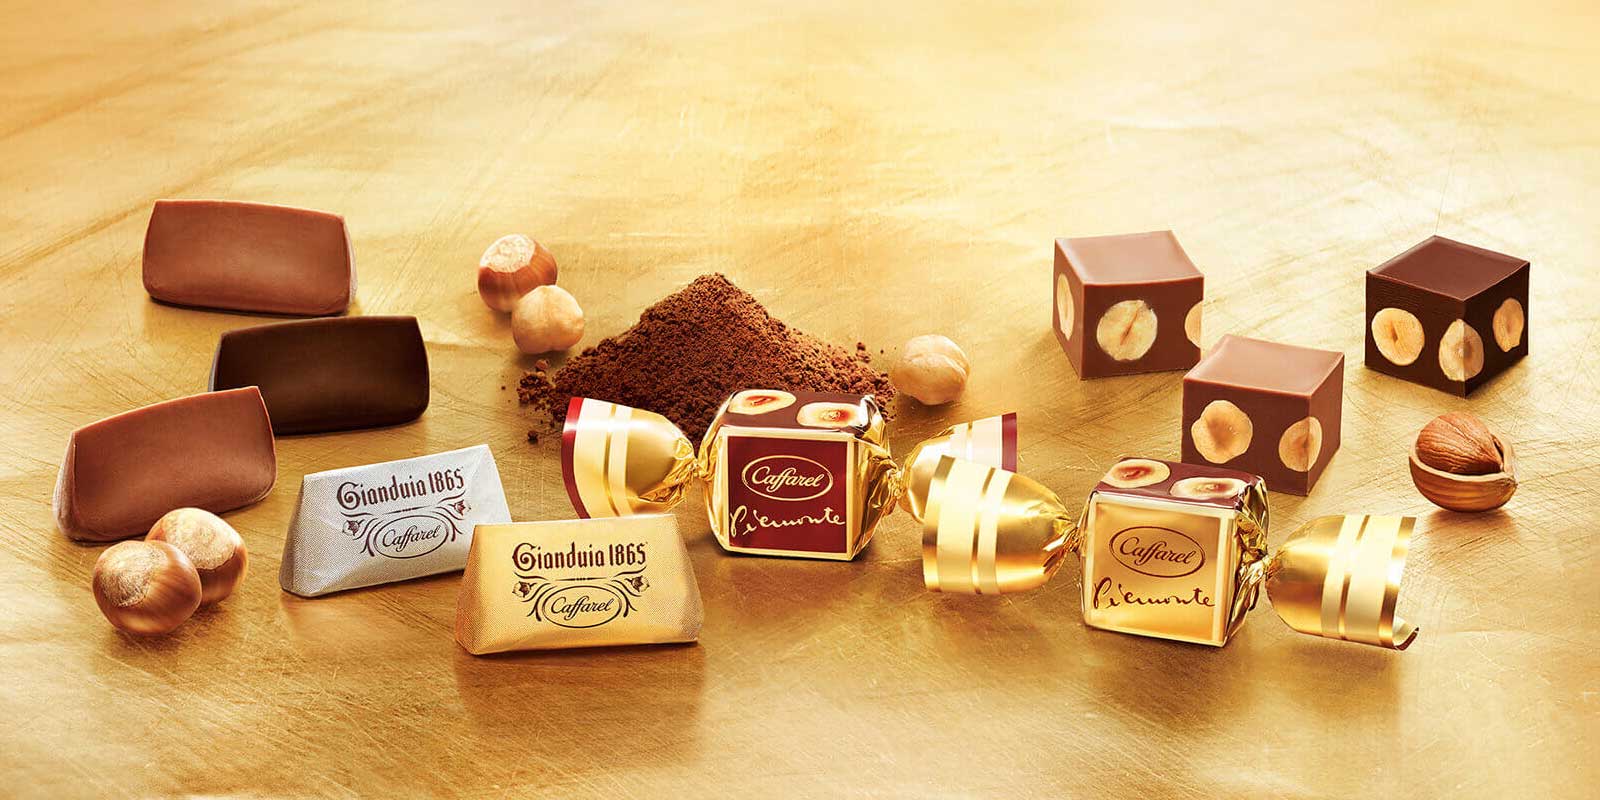 Caffarel aus Piemont, Süsswarenhersteller mit Leidenschaft 1826 eröffnete Paul Caffarel sein Geschäft in Turin, und dank ihm wurde die Stadt zu einer der Schokoladenhauptstädte.
In diesen Jahren anhaltender Kriege war Kakao in Europa eine seltene Zutat. Das Gianduiotto, die außergewöhnlichste Erfindung von Caffarel und eine der denkwürdigsten Spezialitäten in der Welt der Schokolade, wurde aus der Kombination von Kakao und gerösteten piemontesischen Haselnüssen kreiert.